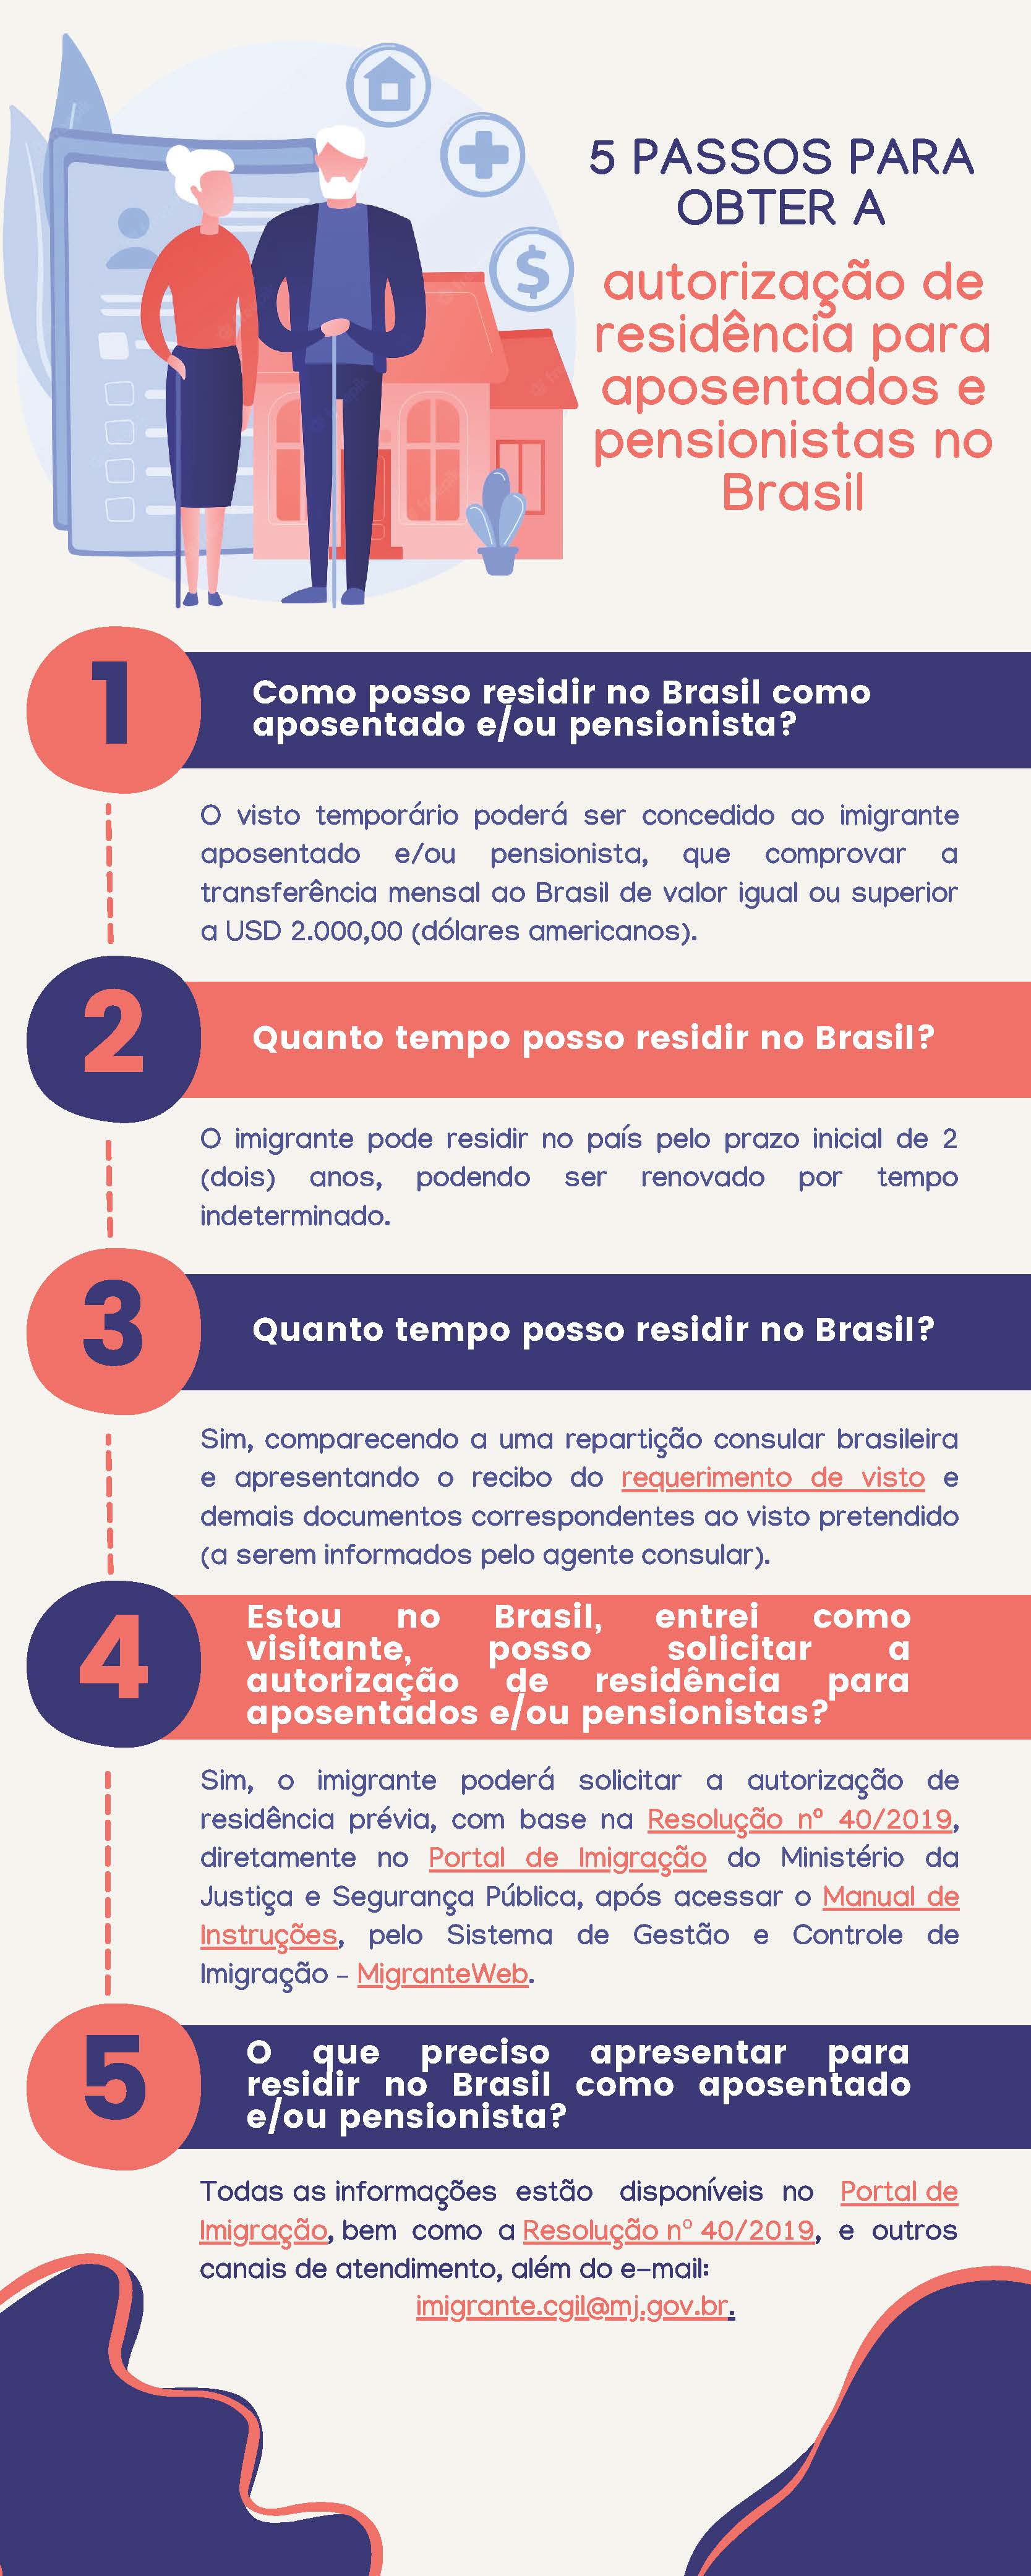 5 passos para obter a autorização de residência para aposentados e pensionistas no Brasil